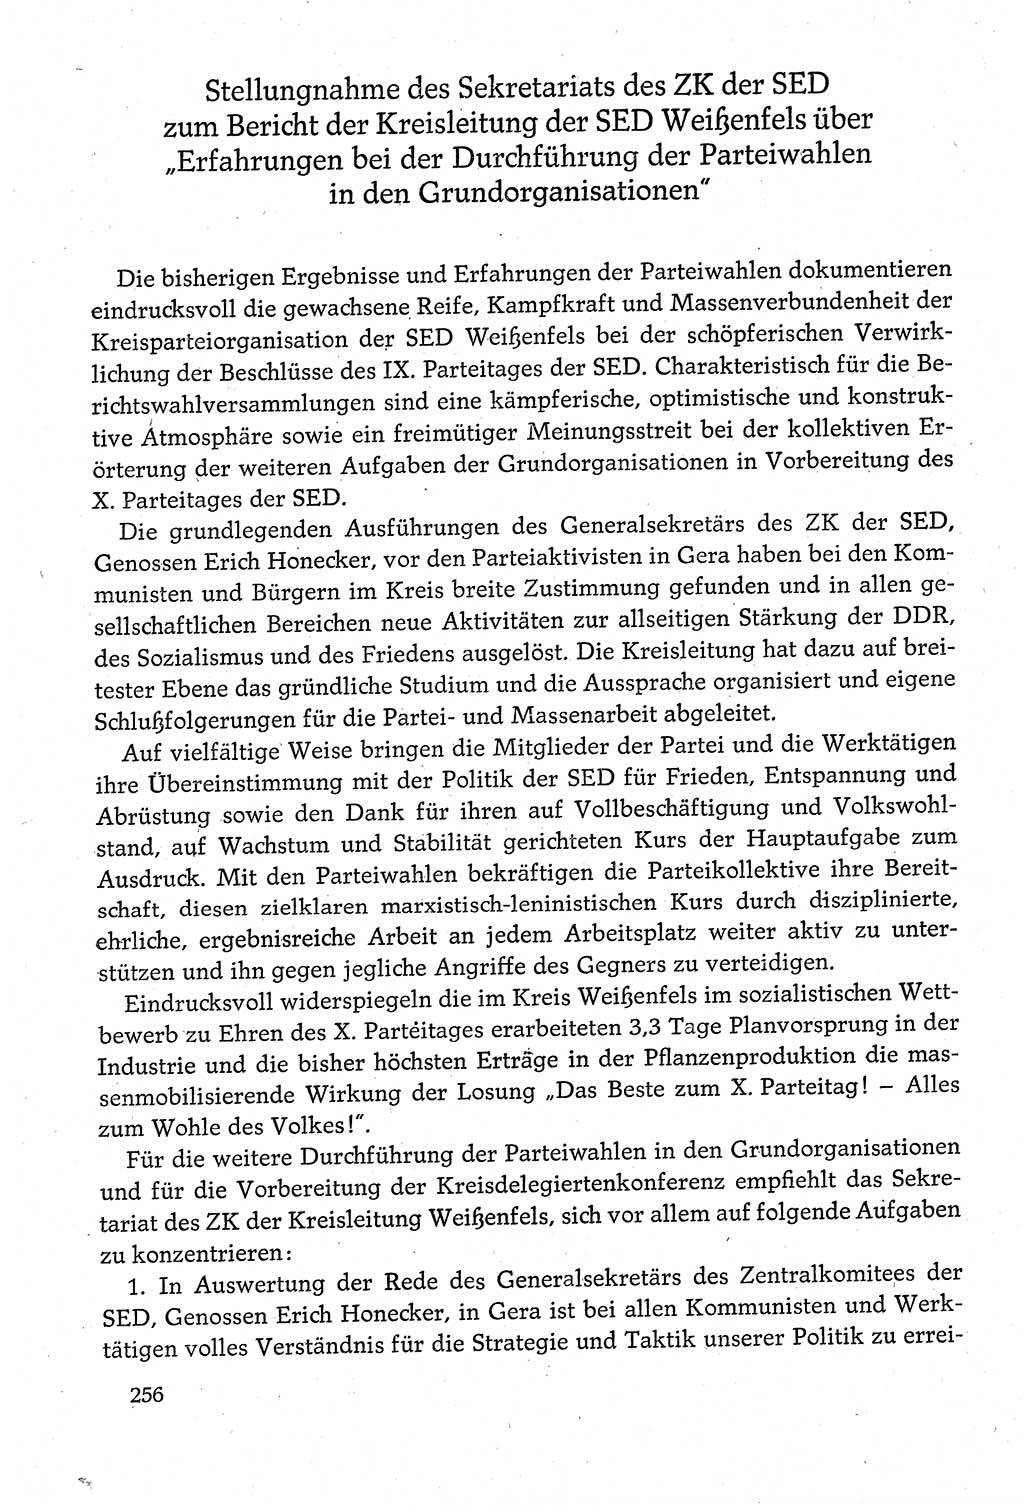 Dokumente der Sozialistischen Einheitspartei Deutschlands (SED) [Deutsche Demokratische Republik (DDR)] 1980-1981, Seite 256 (Dok. SED DDR 1980-1981, S. 256)